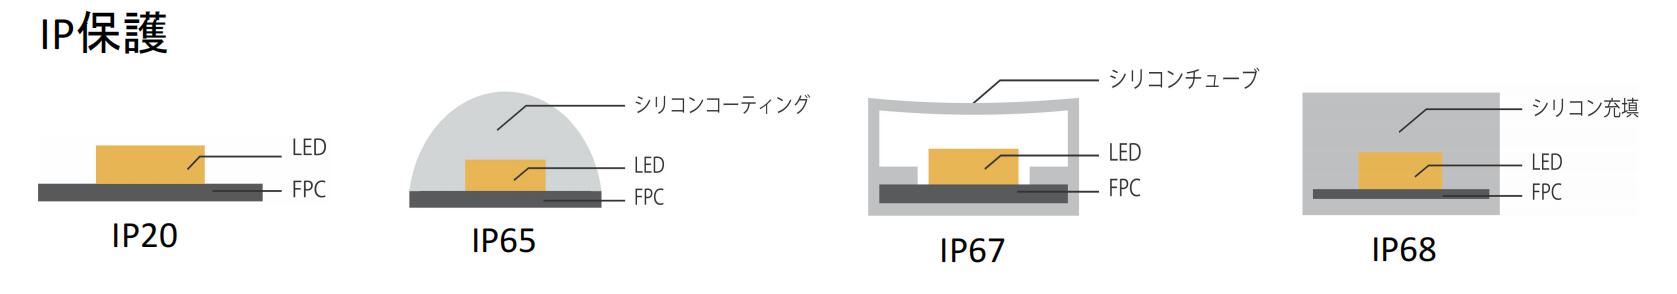 IP保護.jpg